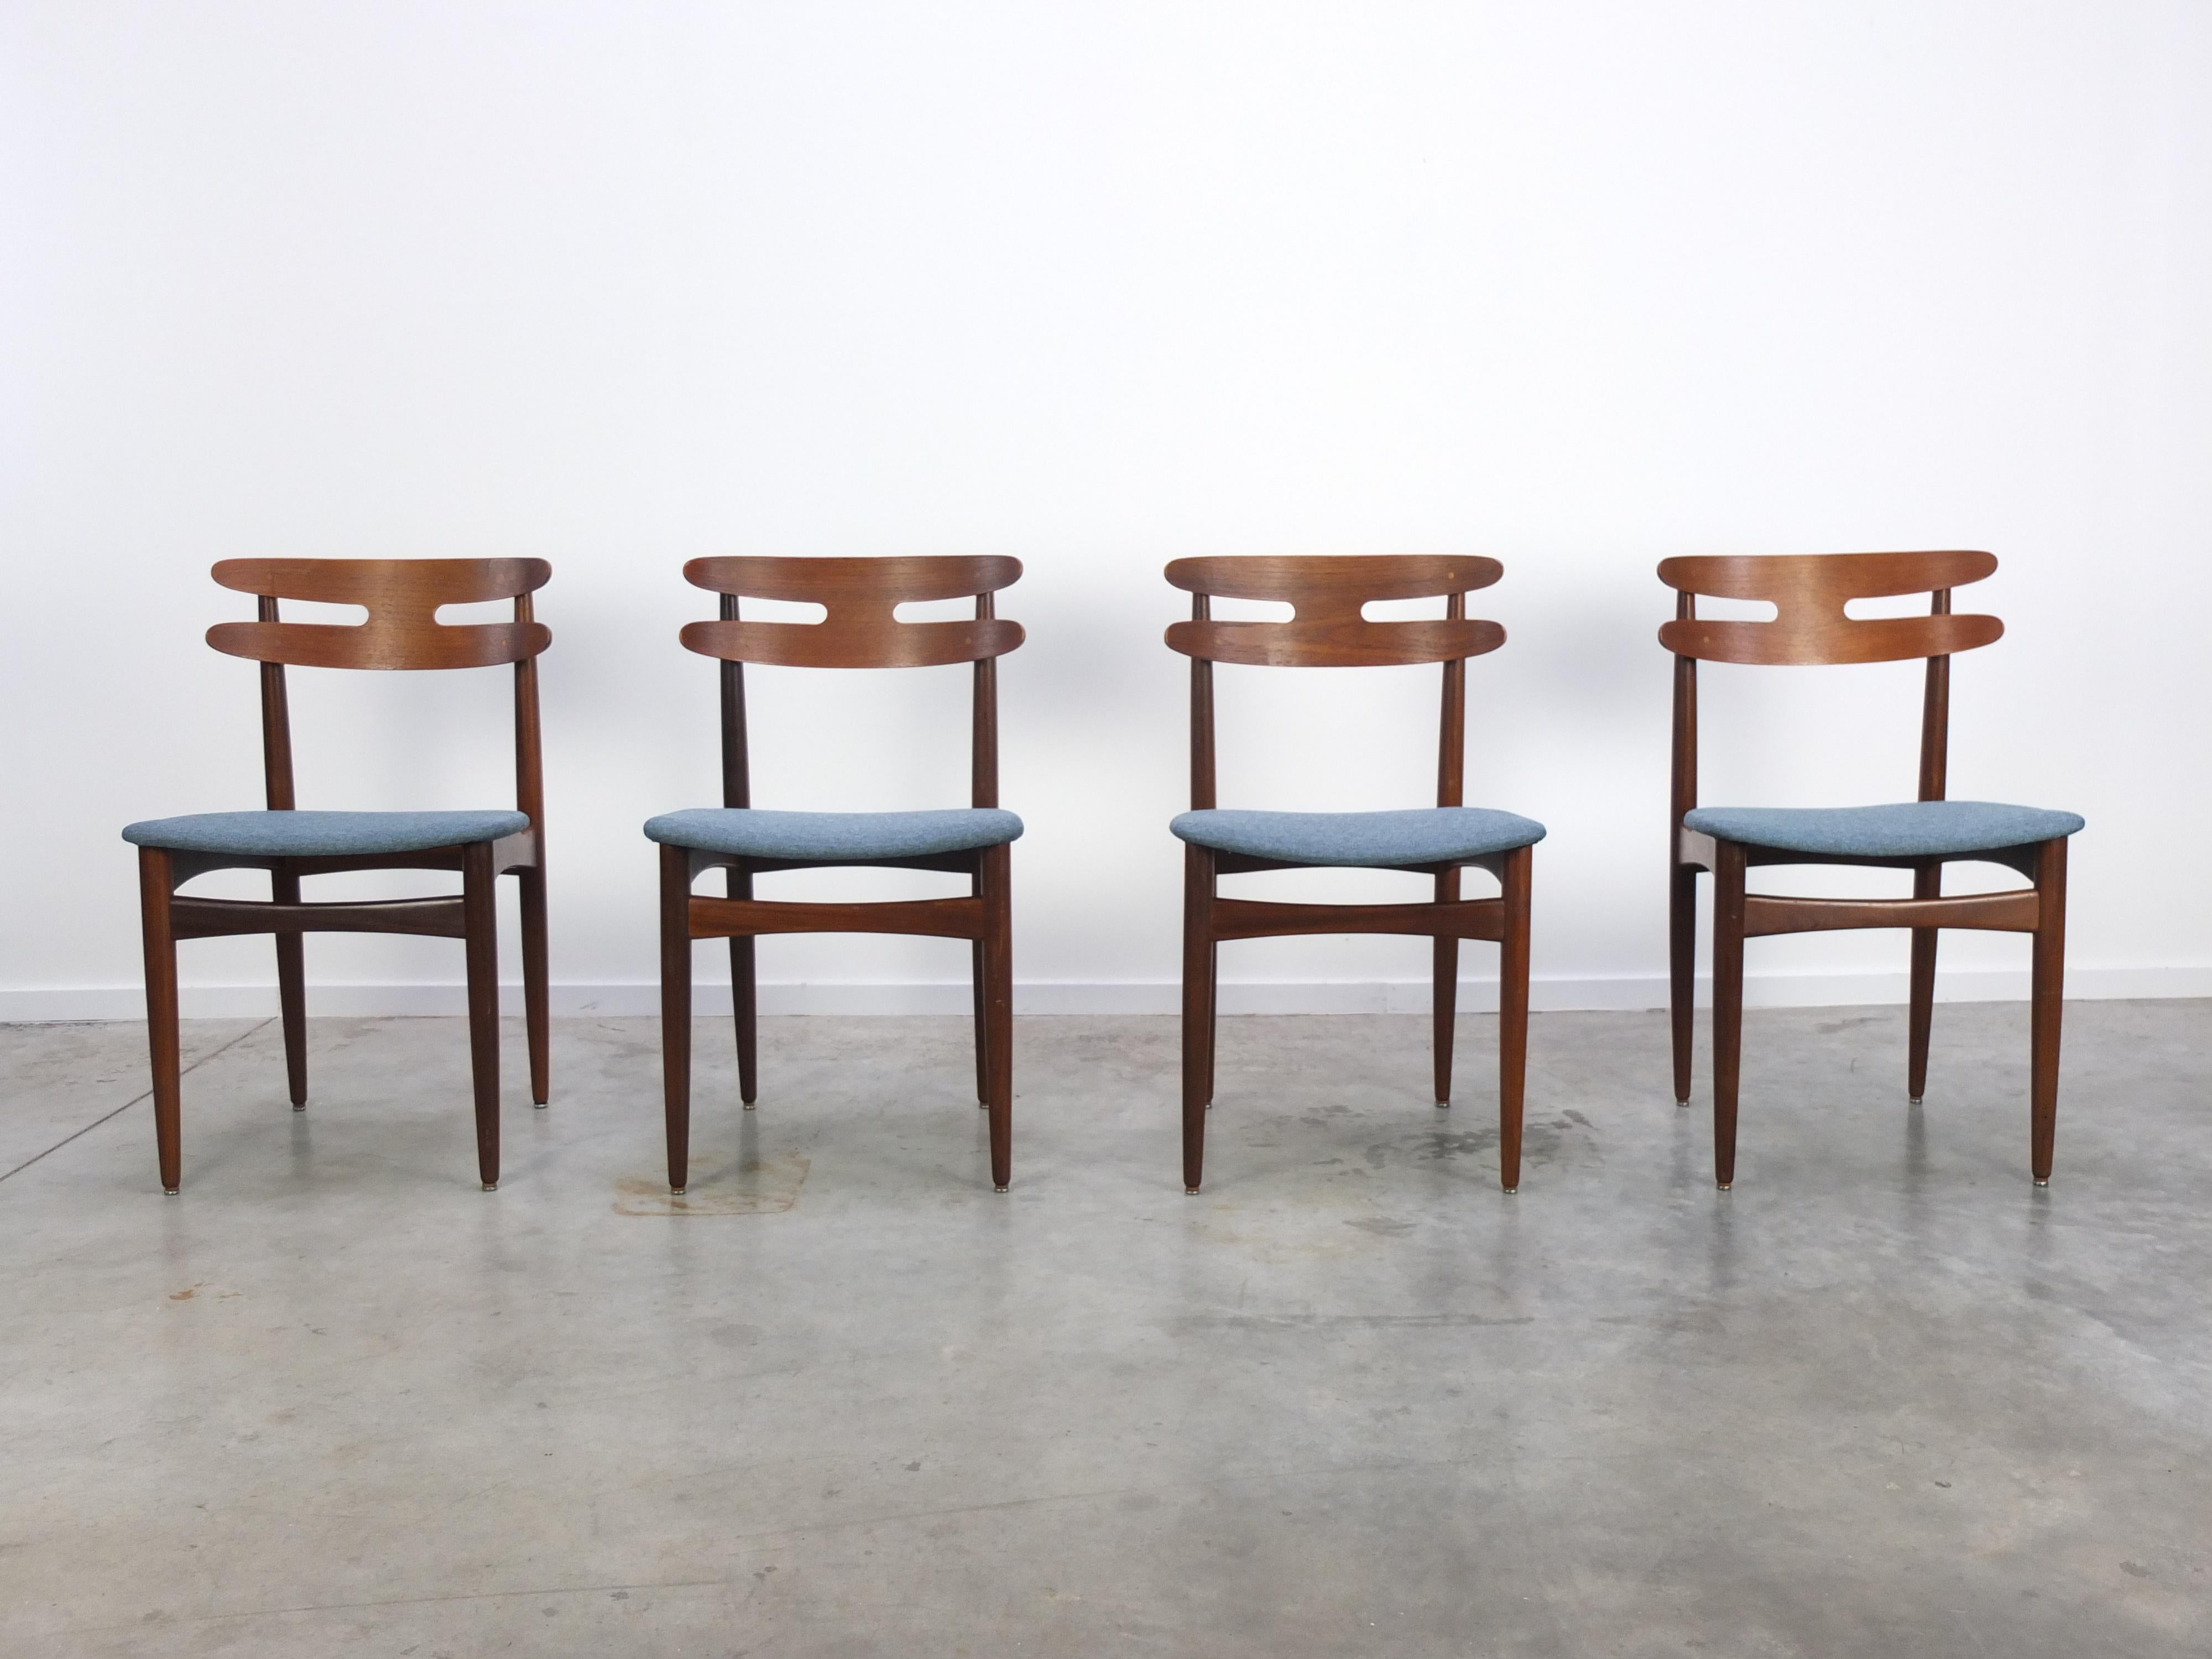 Schöner Satz von 4 seltenen 'Model 178' Esszimmerstühlen, entworfen von Johannes Andersen für Bramin in den 1960er Jahren. Hergestellt aus massiven Teakholzrahmen mit sehr dekorativen skulpturalen Rückenlehnen und sichtbaren Messingverbindungen. Neu